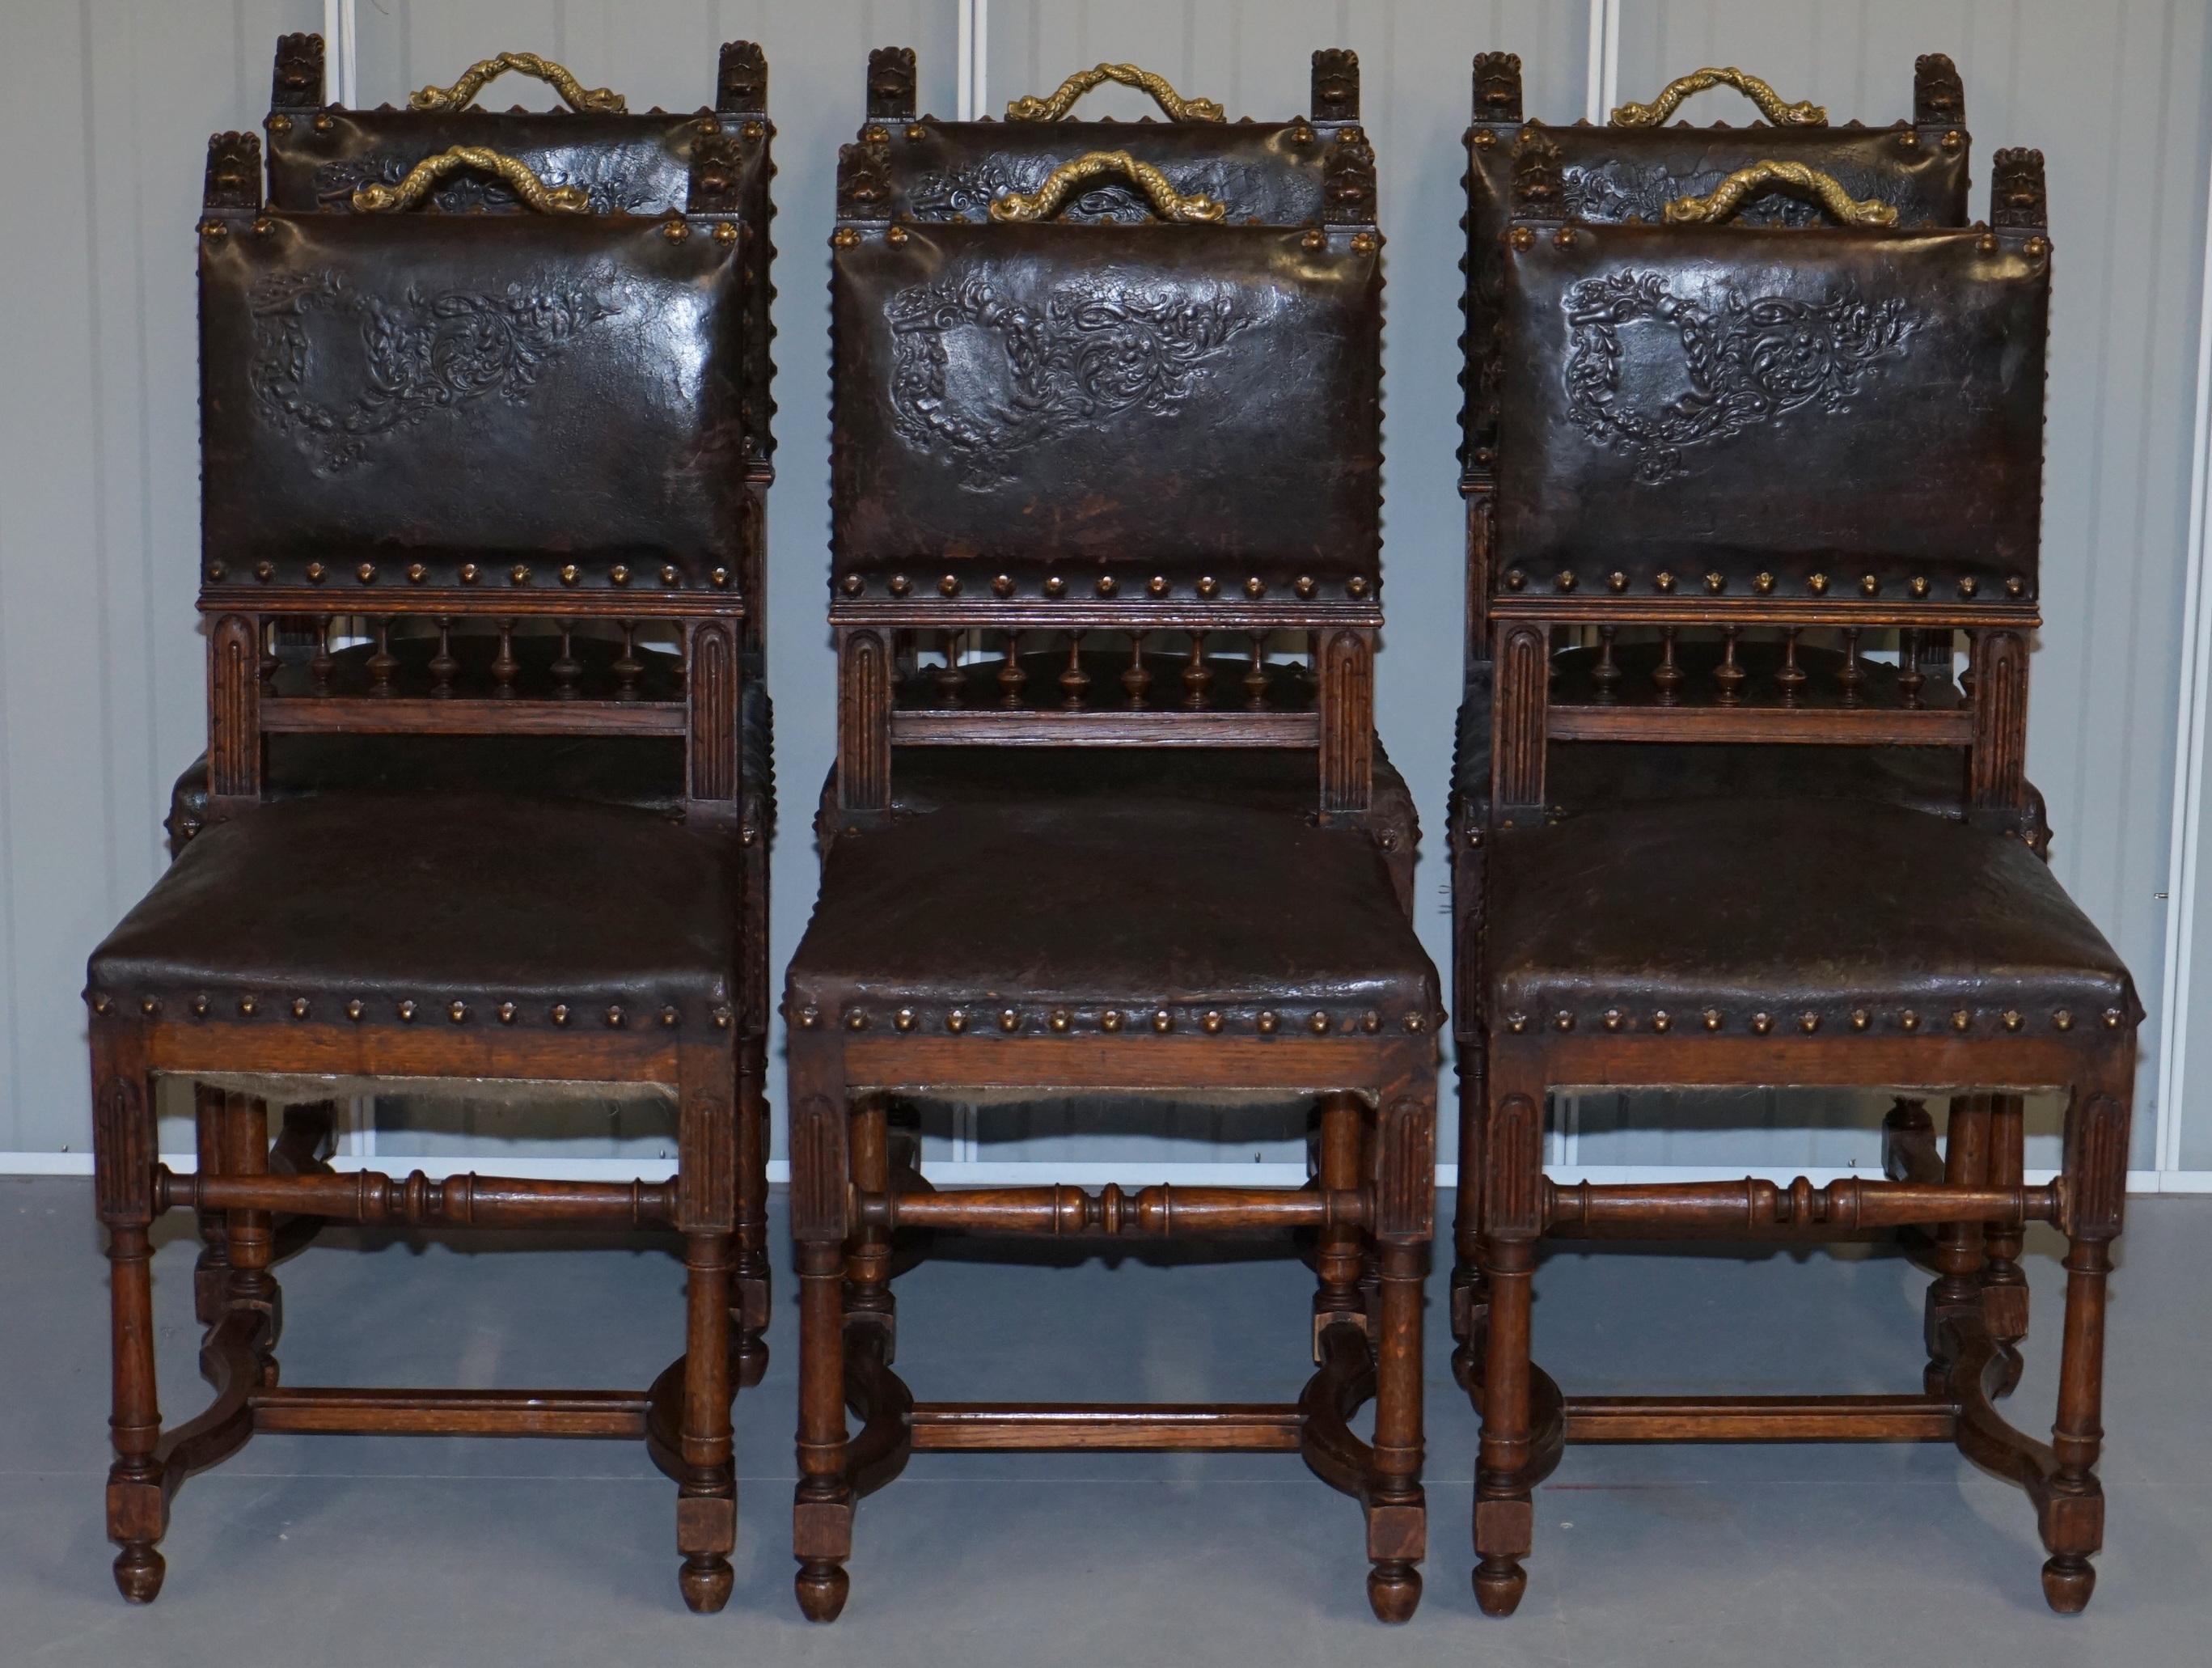 Wir freuen uns, dieses außergewöhnliche Set von sechs französischen Eichenstühlen mit geprägter brauner Lederpolsterung HENRY II um 1880 mit bronzenen Delphingriffen zum Verkauf anzubieten.

Ein sehr seltener und absolut originaler Satz